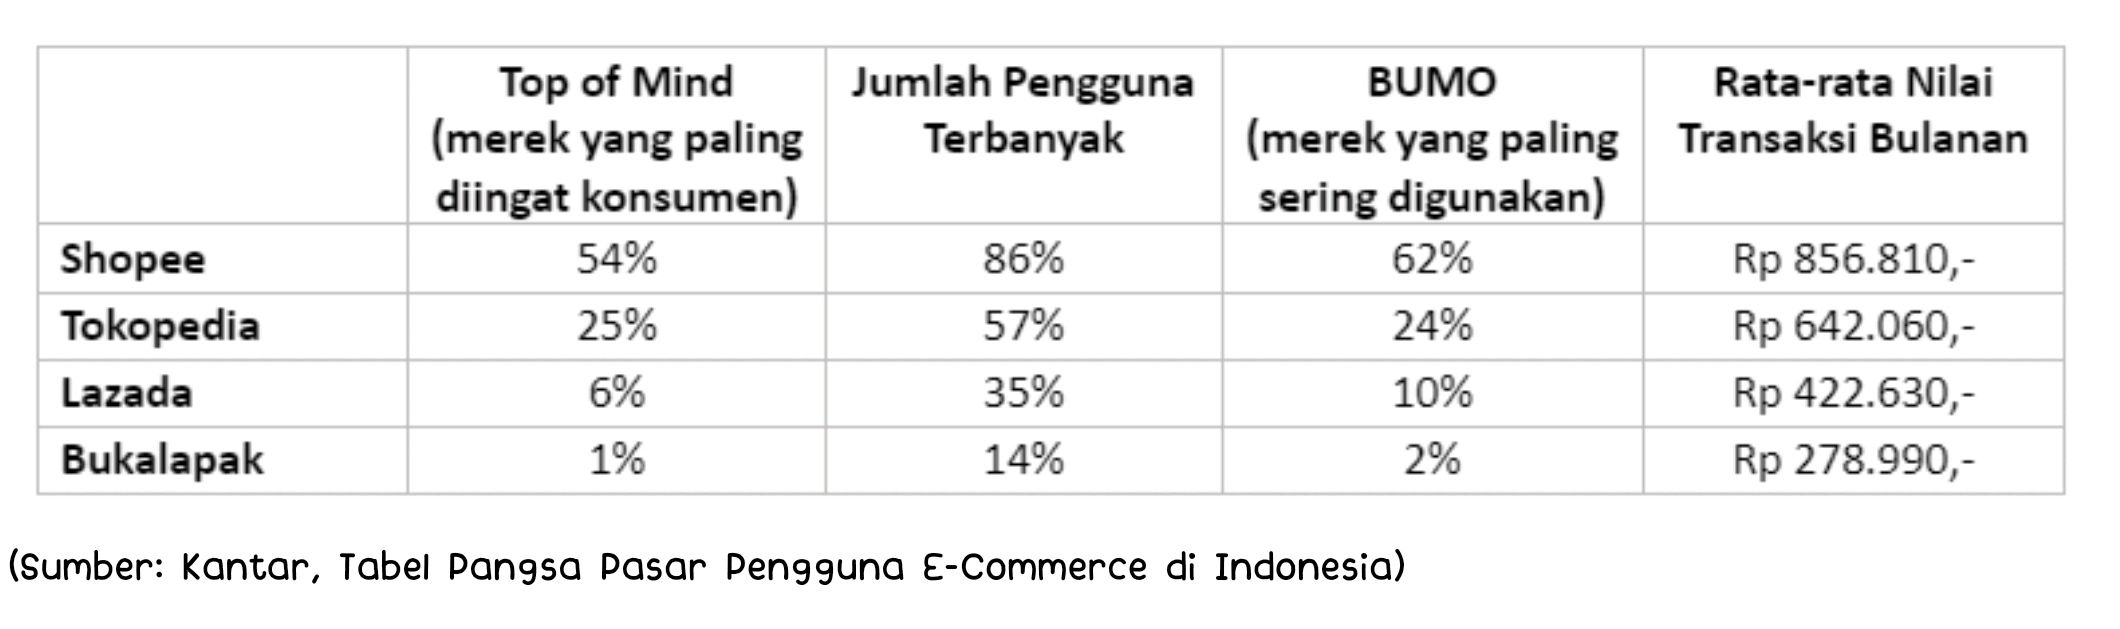 Tabel pangsa pasar pengguna e-commerce di Indonesia